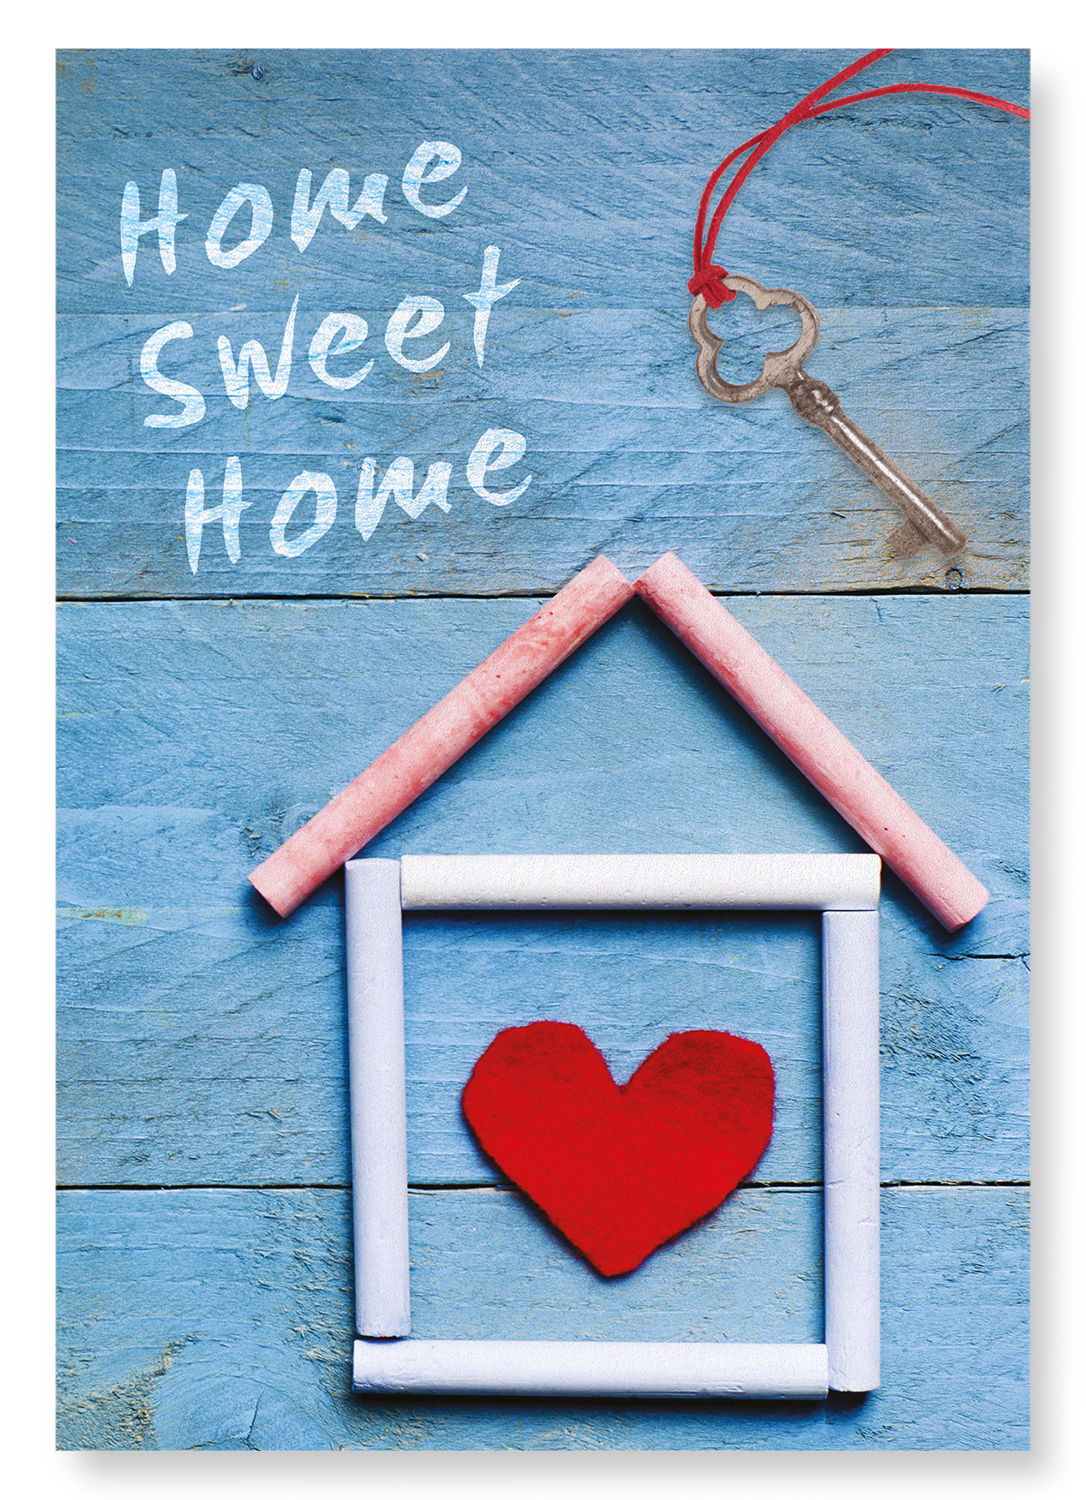 HOME SWEET HOME: Photo Art print